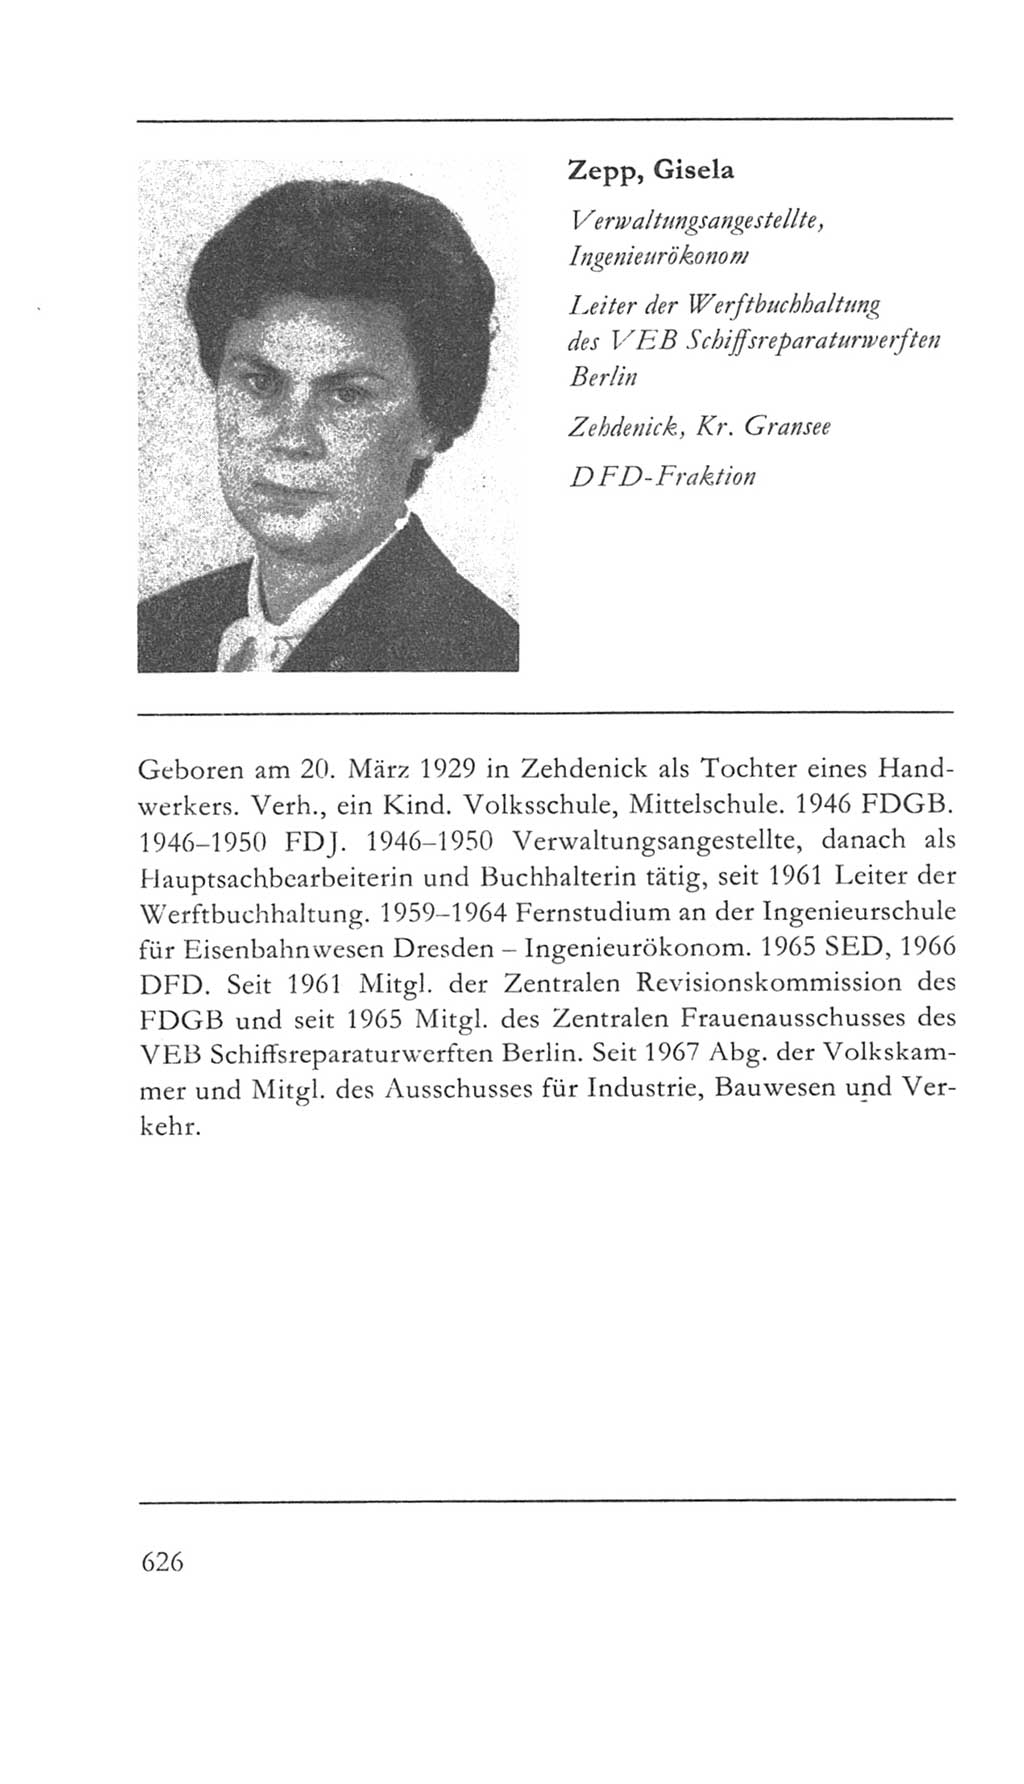 Volkskammer (VK) der Deutschen Demokratischen Republik (DDR) 5. Wahlperiode 1967-1971, Seite 626 (VK. DDR 5. WP. 1967-1971, S. 626)